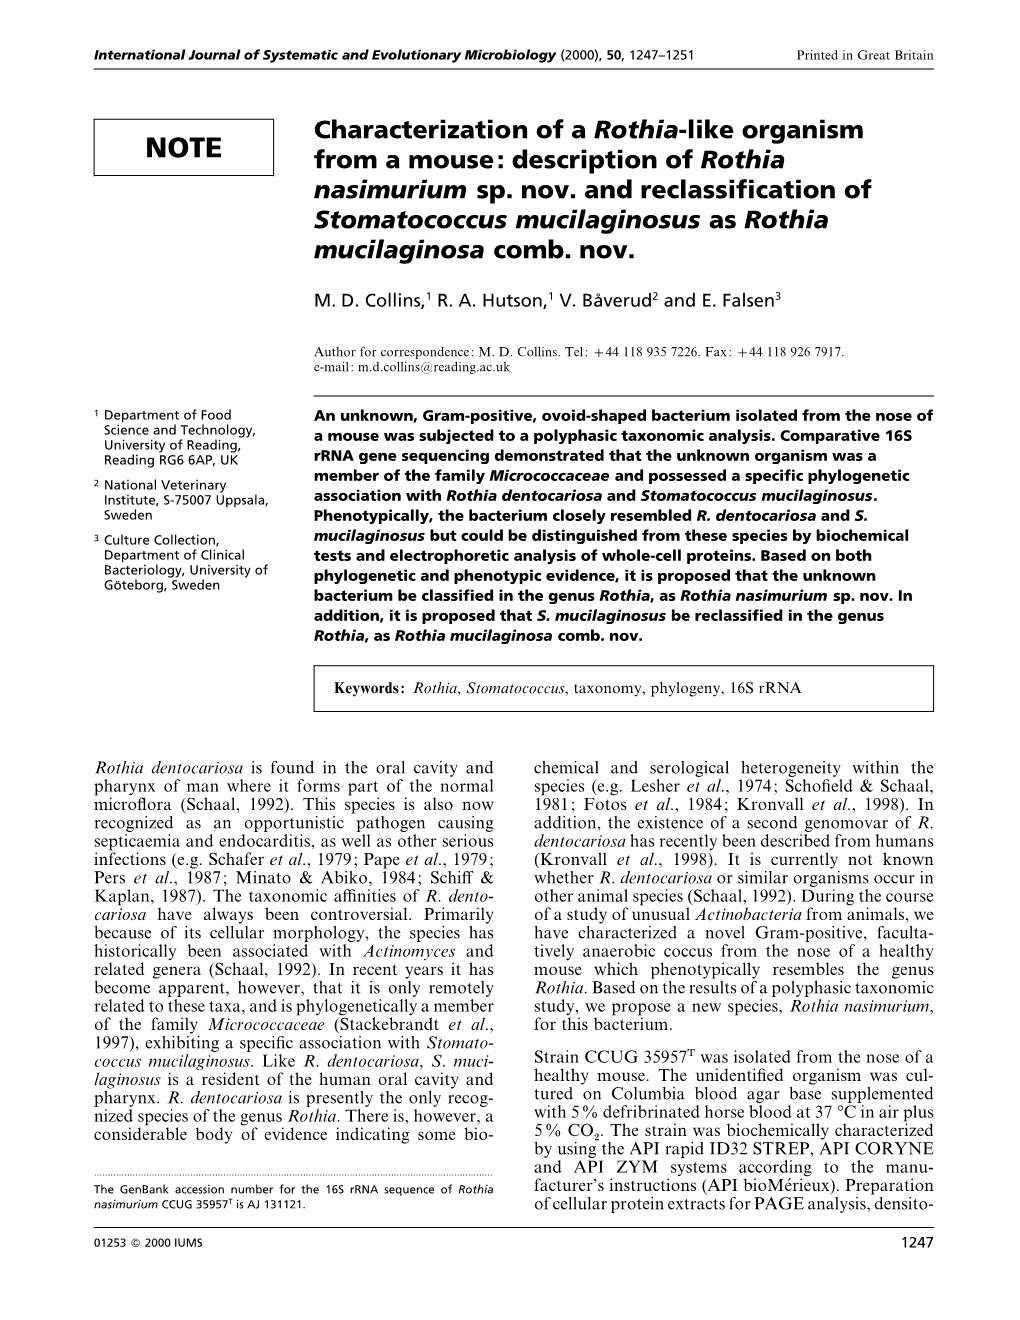 Description of Rothia Nasimurium Sp. Nov. and Reclassification of Stoma